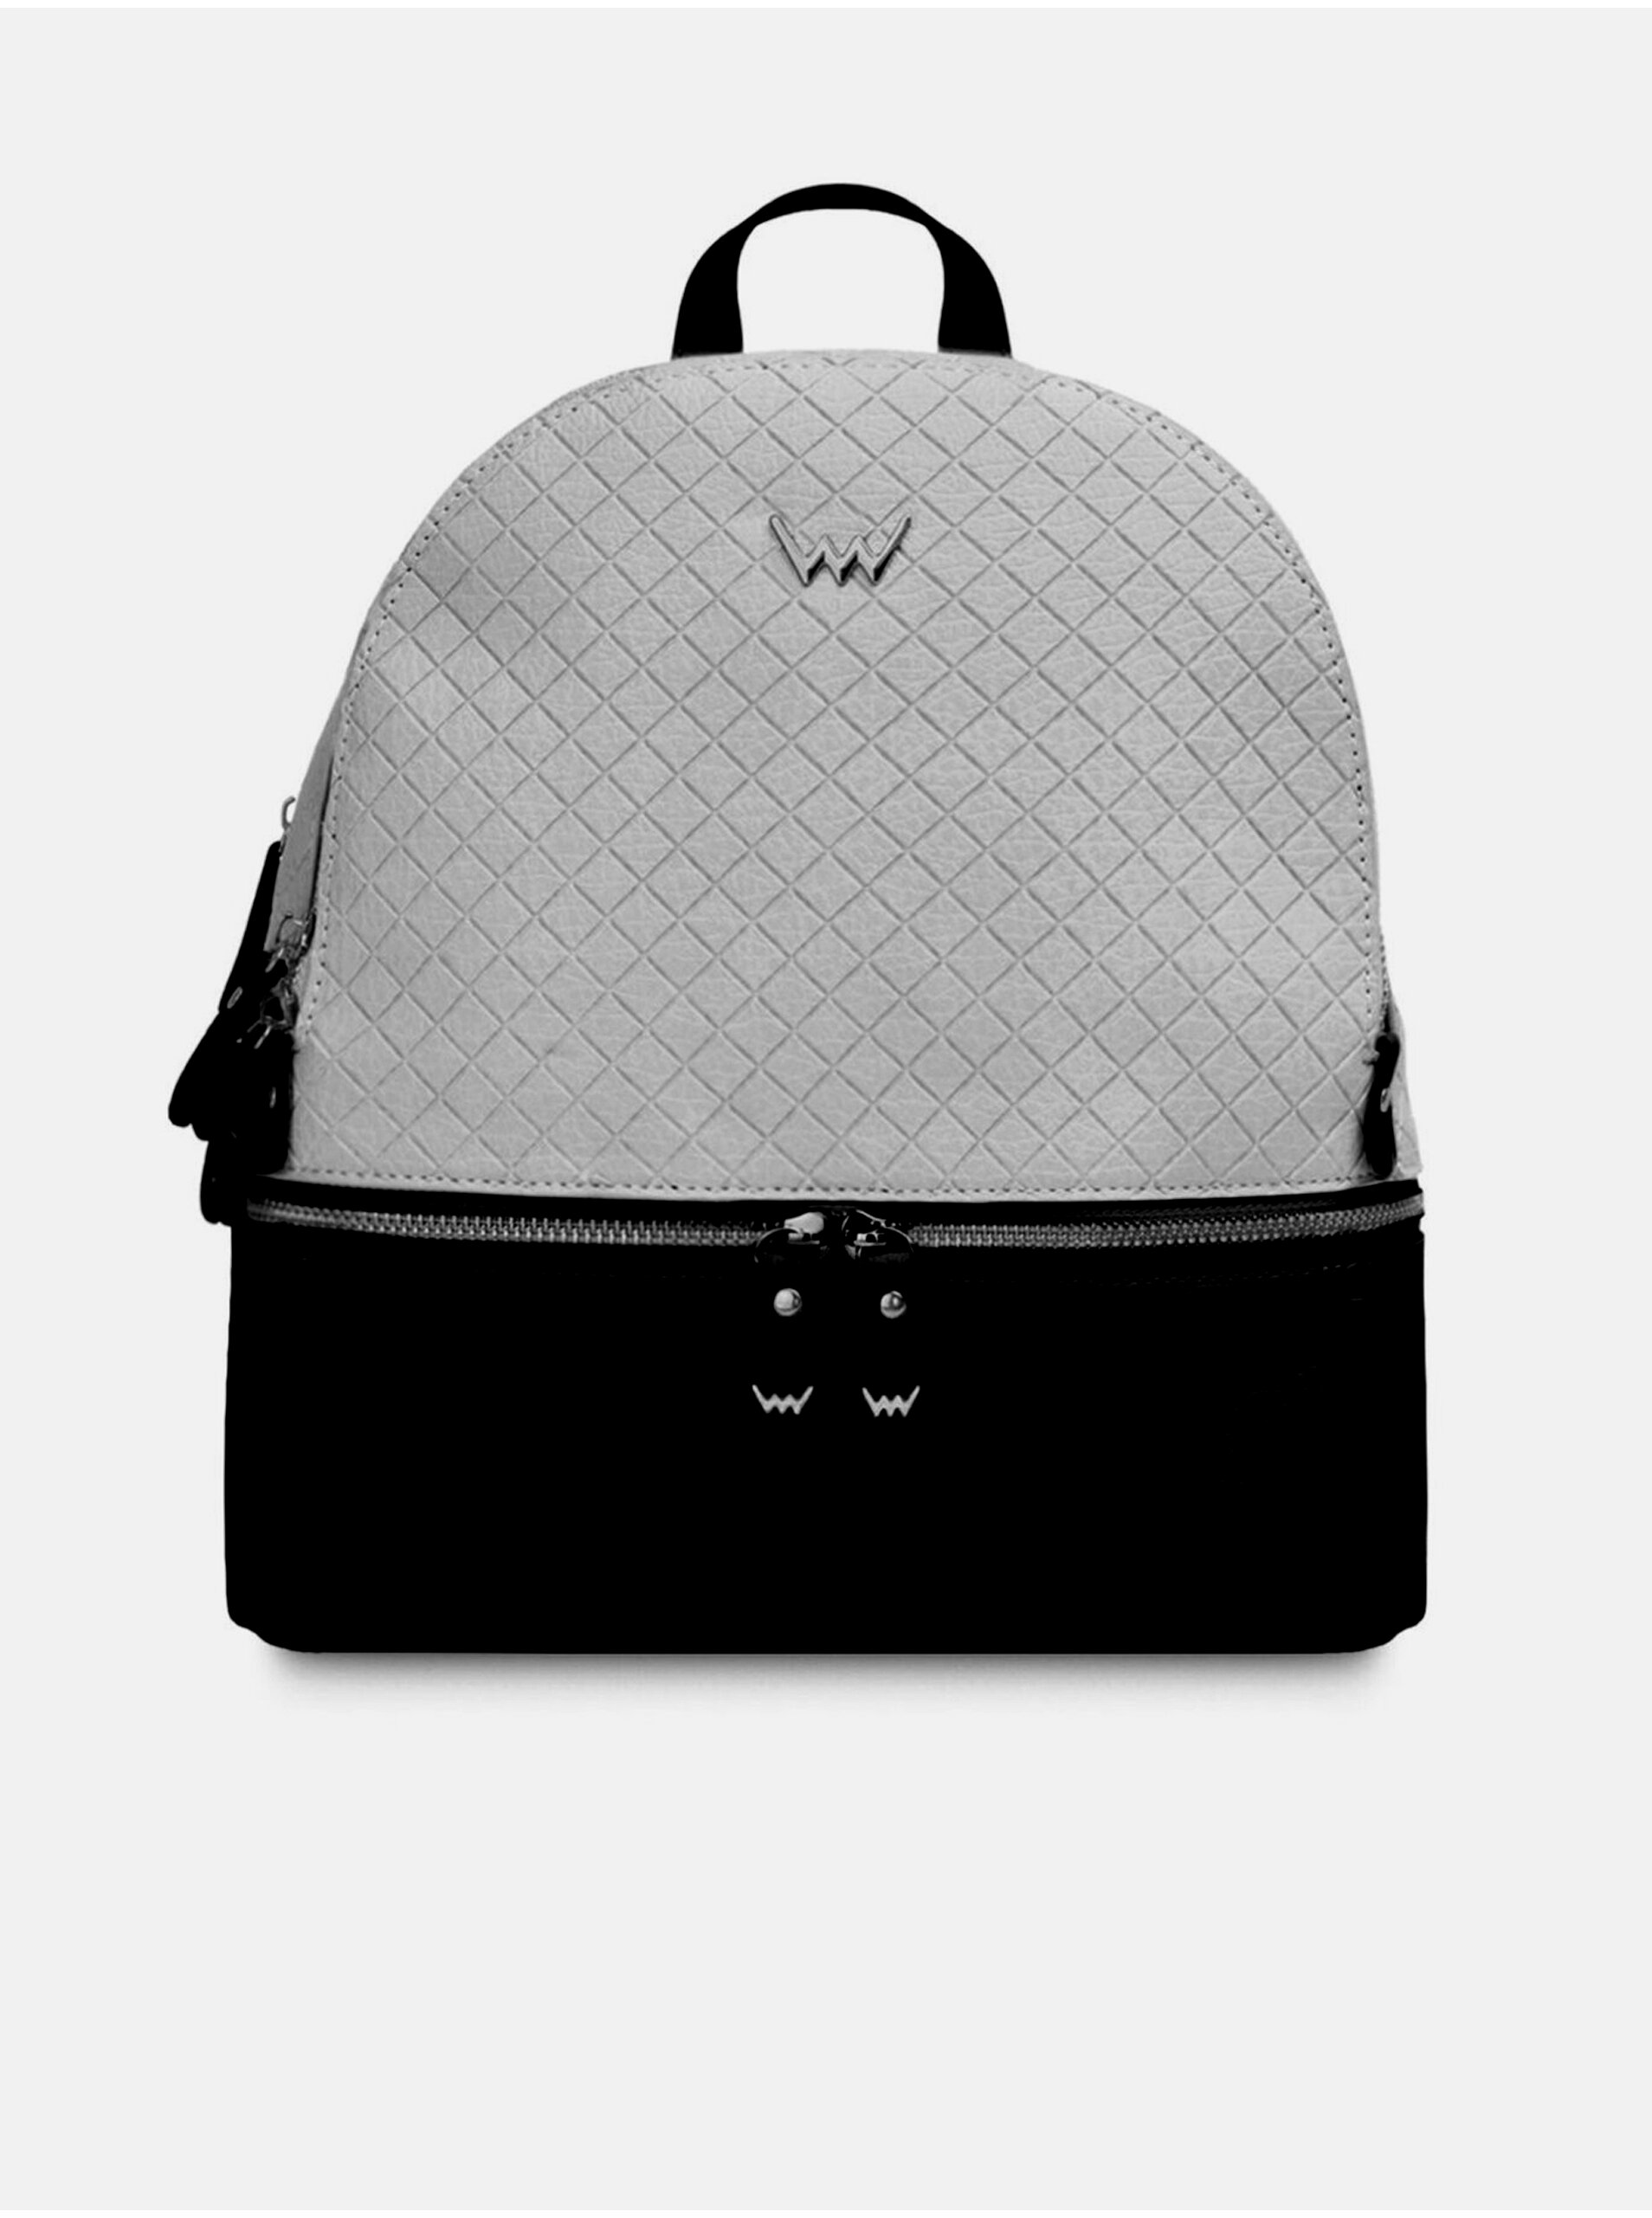 E-shop Černo-šedý dámský batoh VUCH Brody